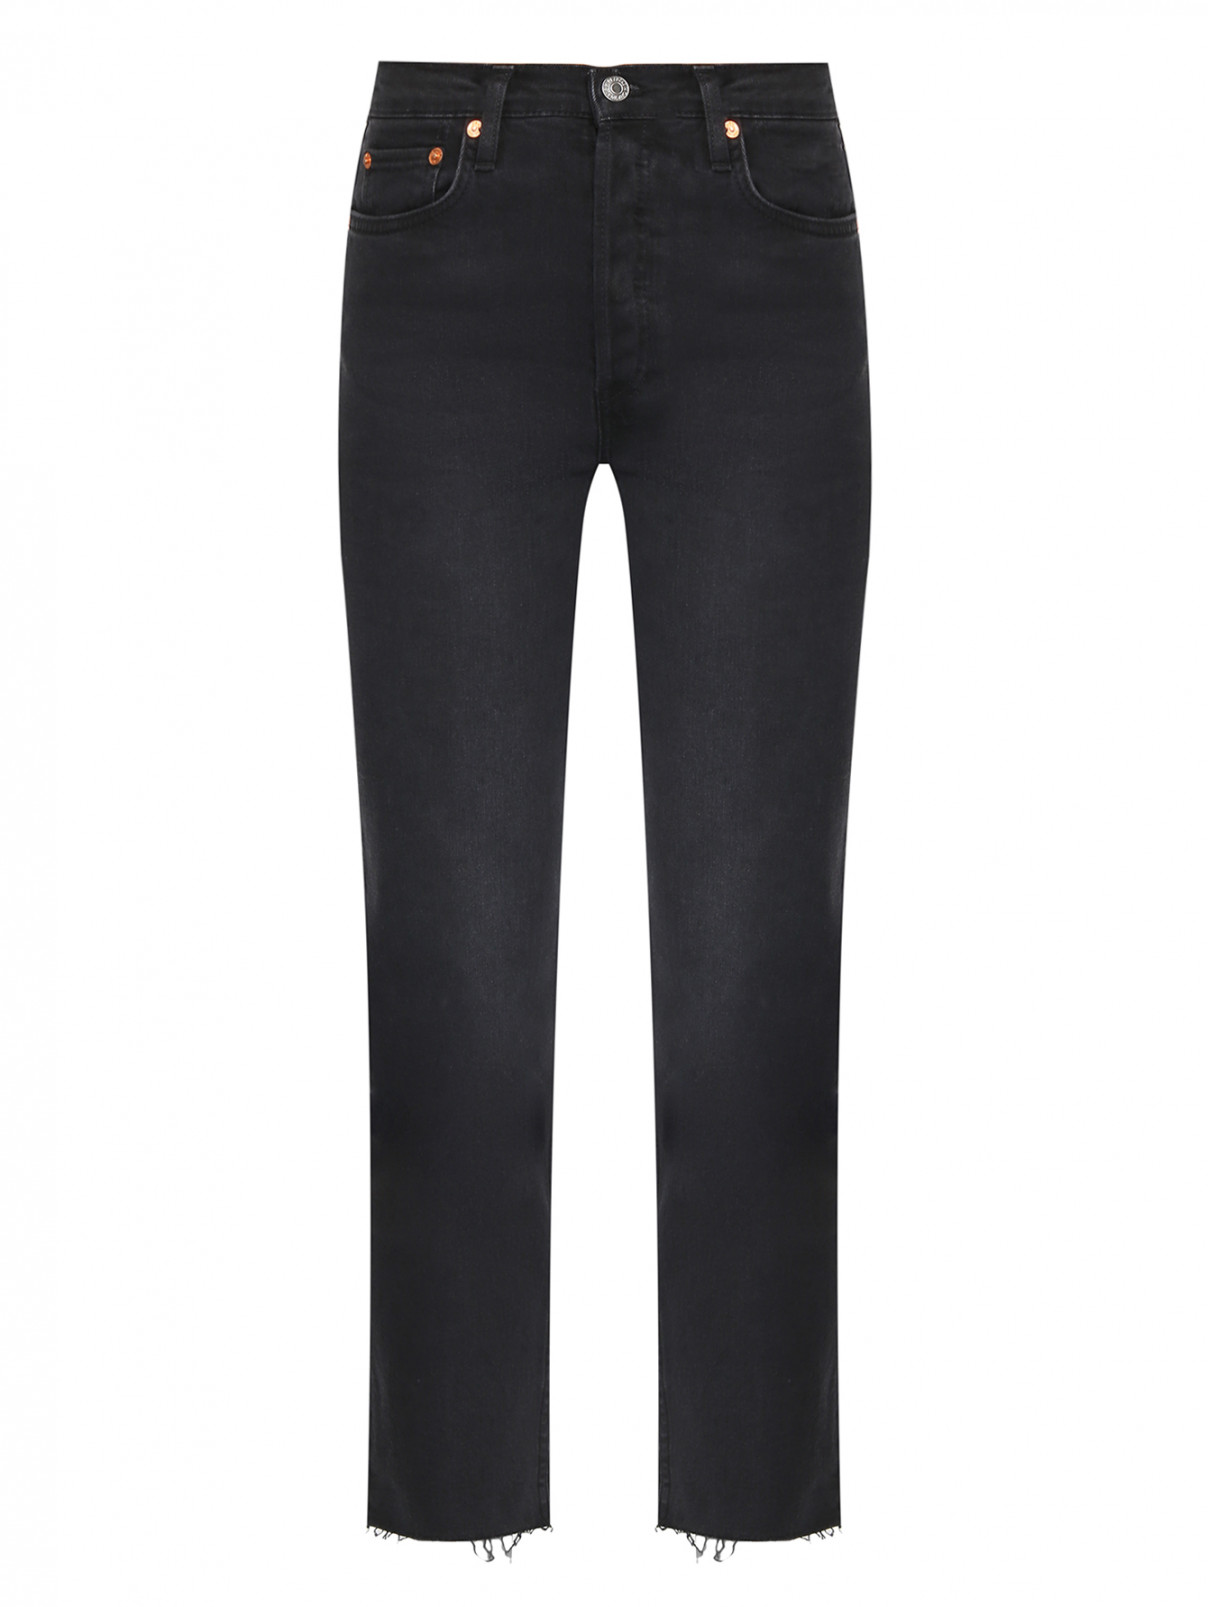 Укороченные джинсы из хлопка Re/Done  –  Общий вид  – Цвет:  Черный